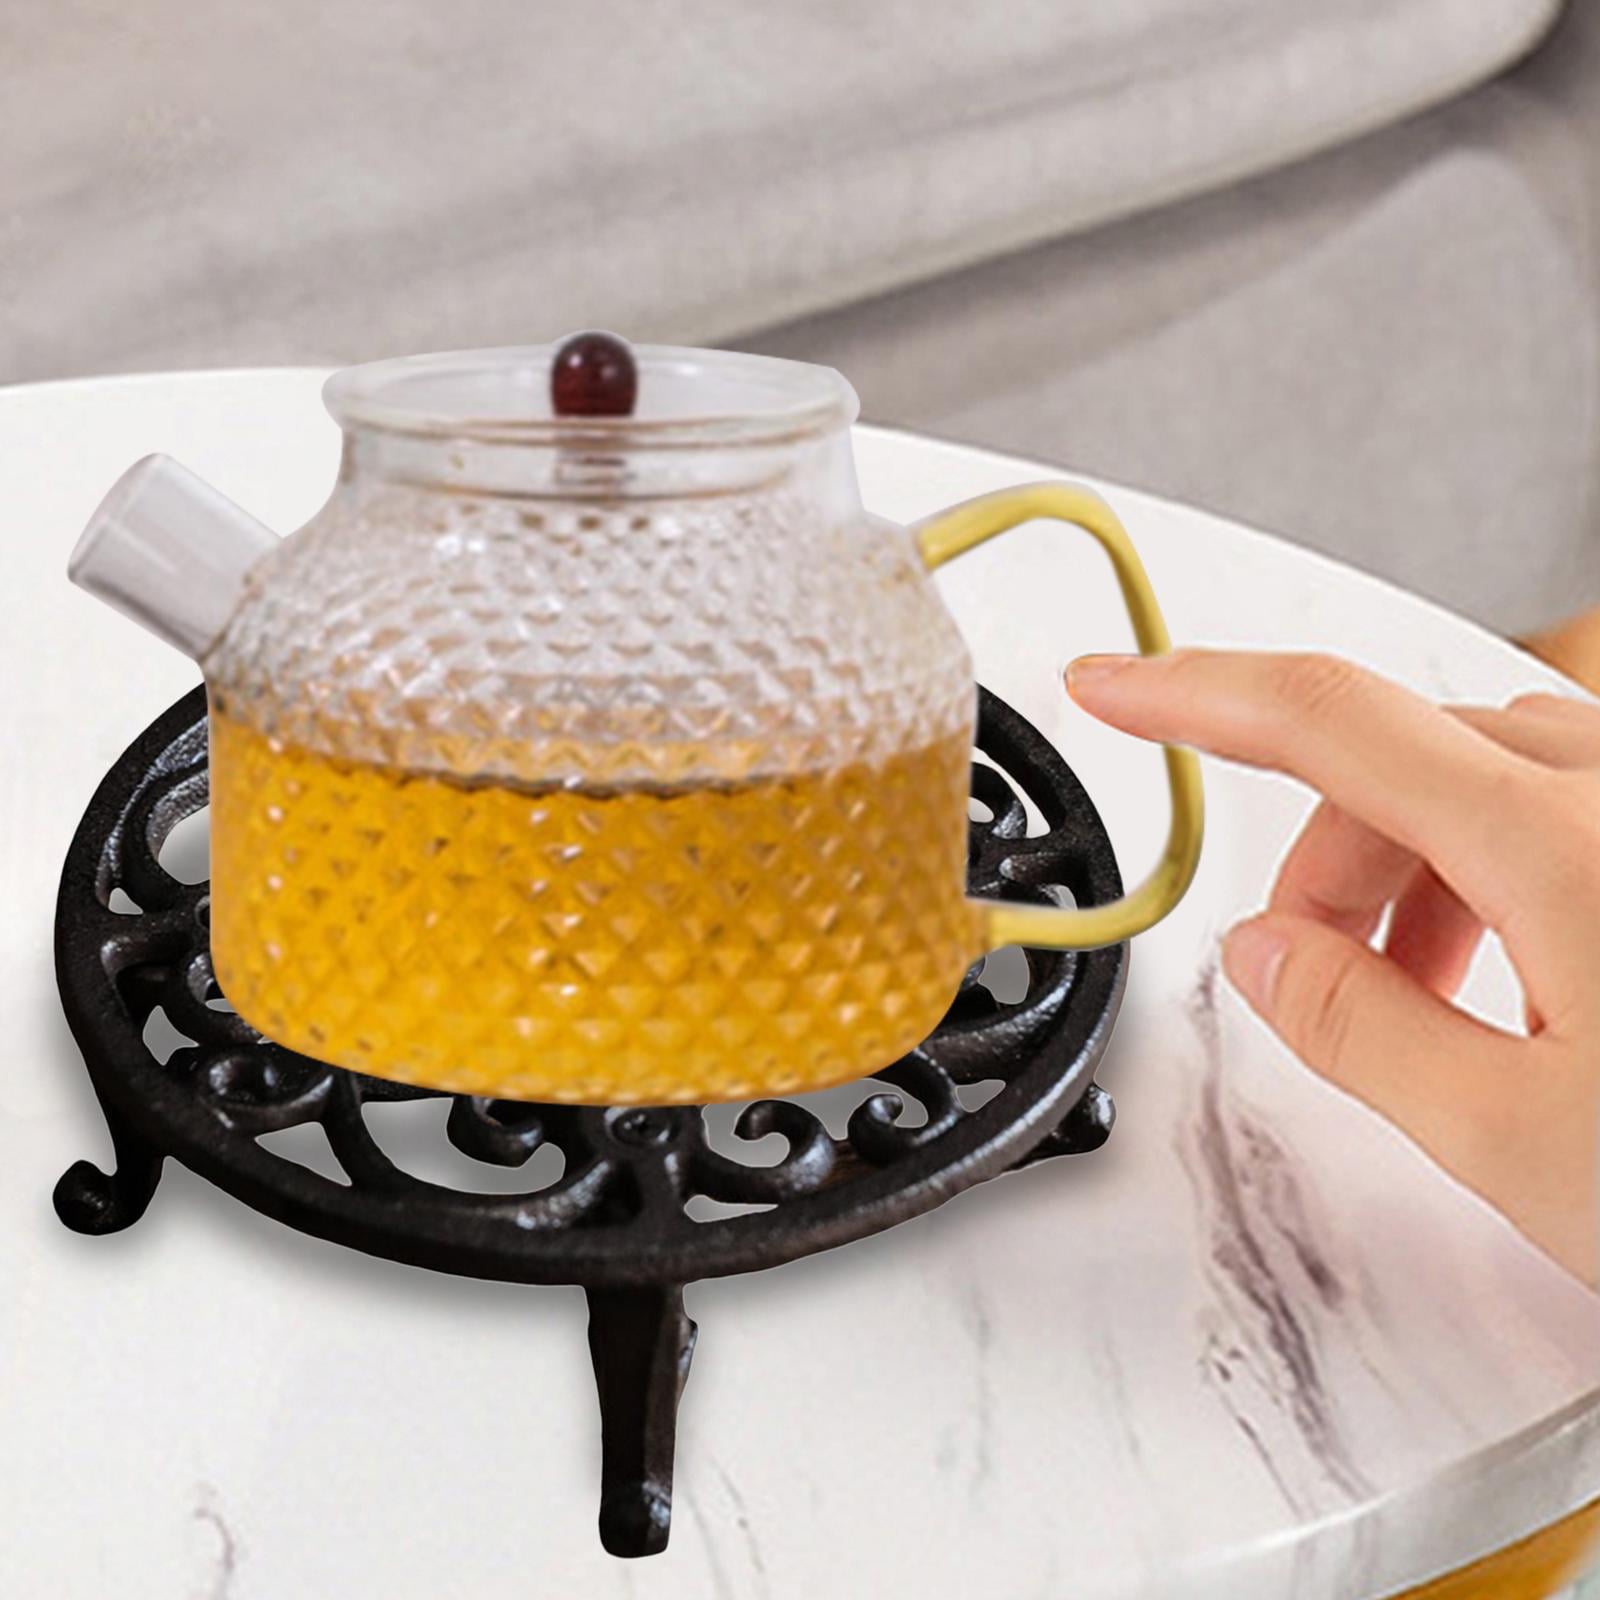 Esschert Design USA Cast Iron Teapot Warmer